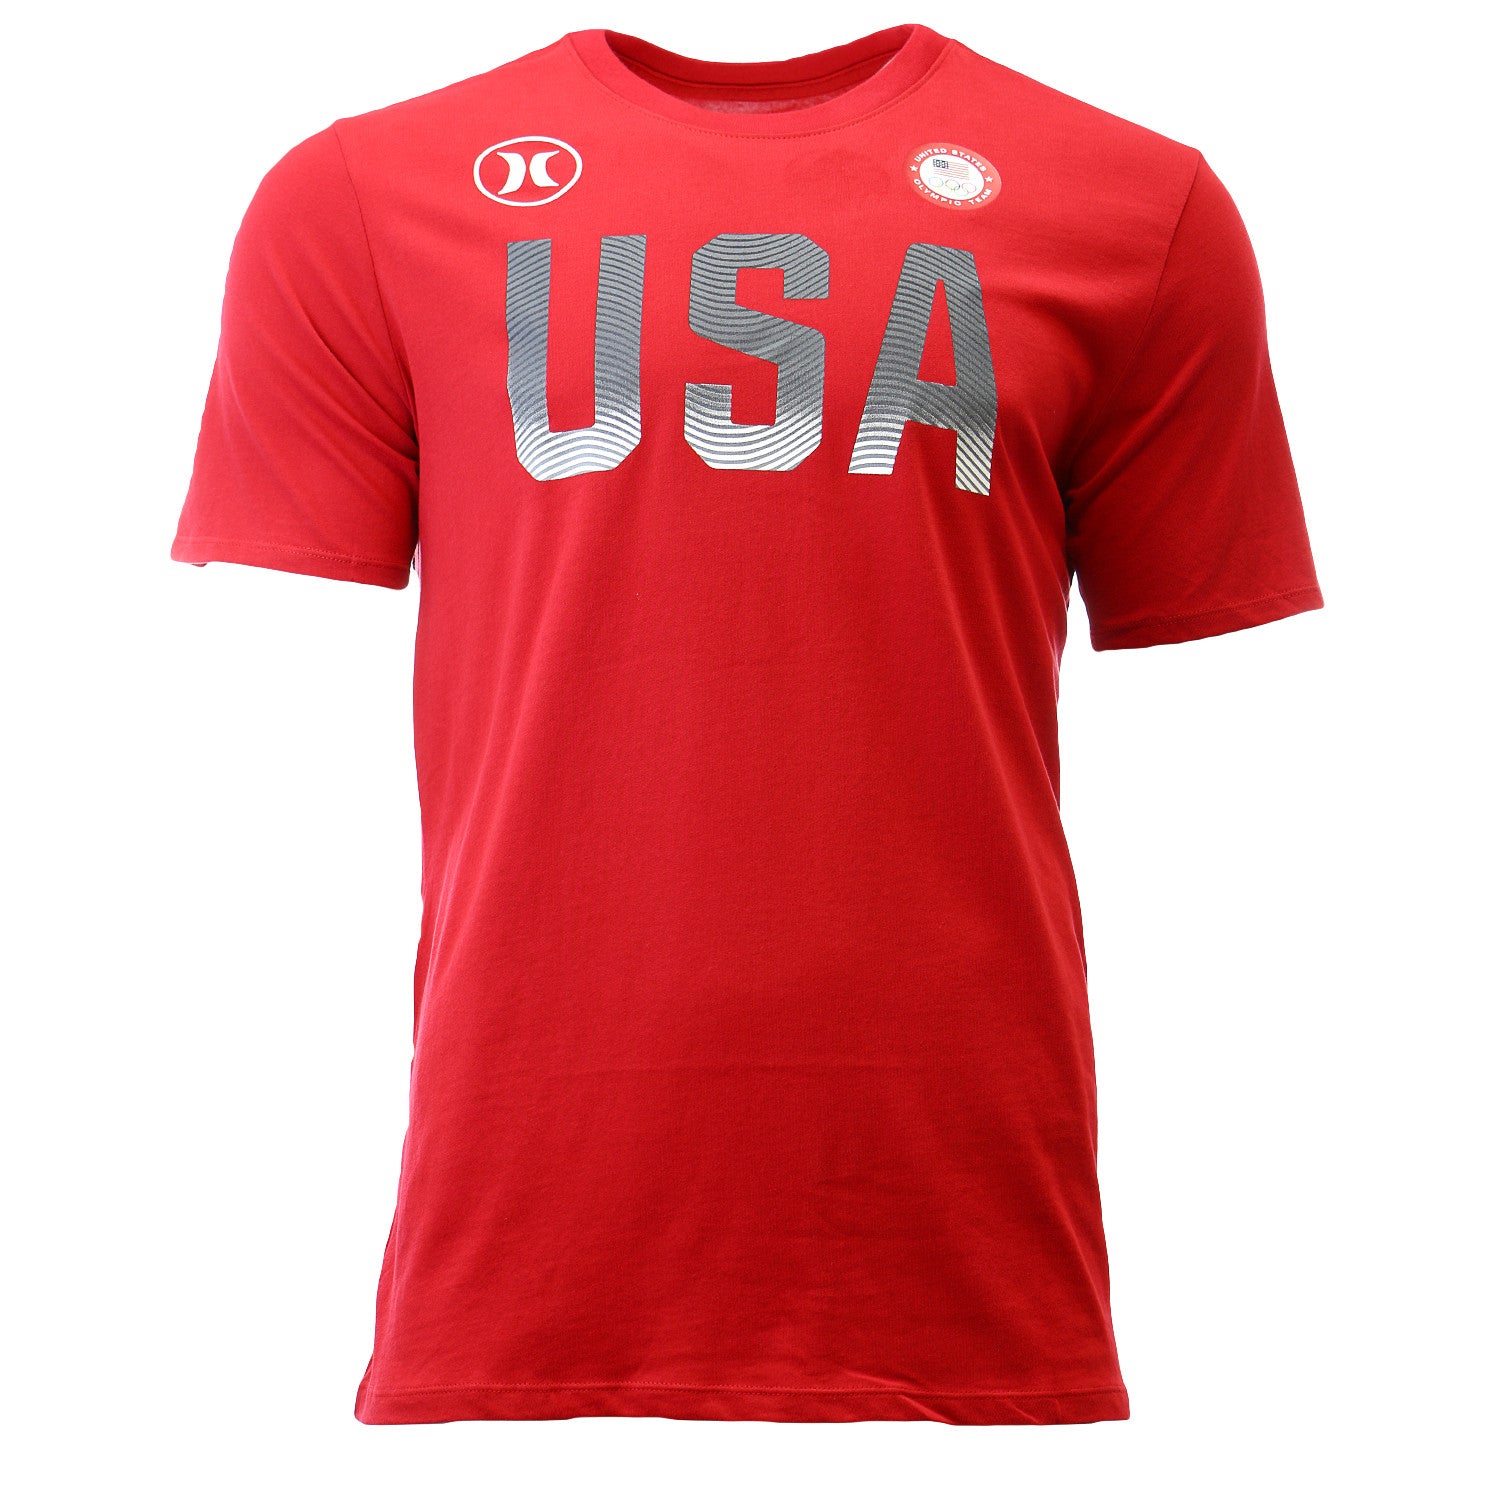 Team Usa Shirt | vlr.eng.br